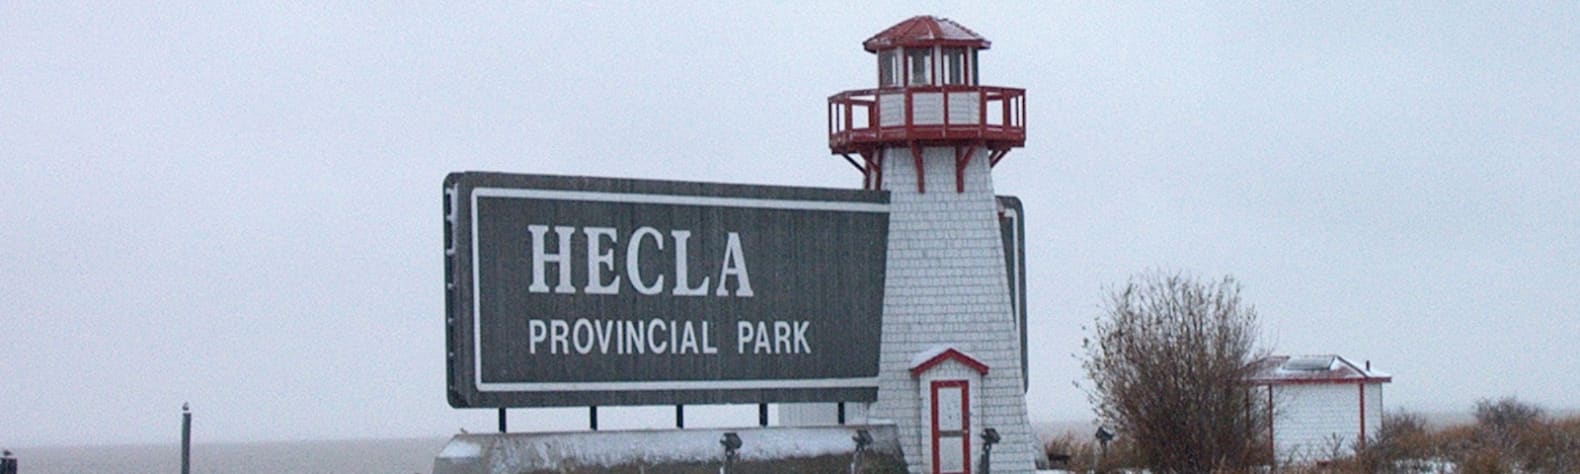 Hecla-Grindstone Provincial Park